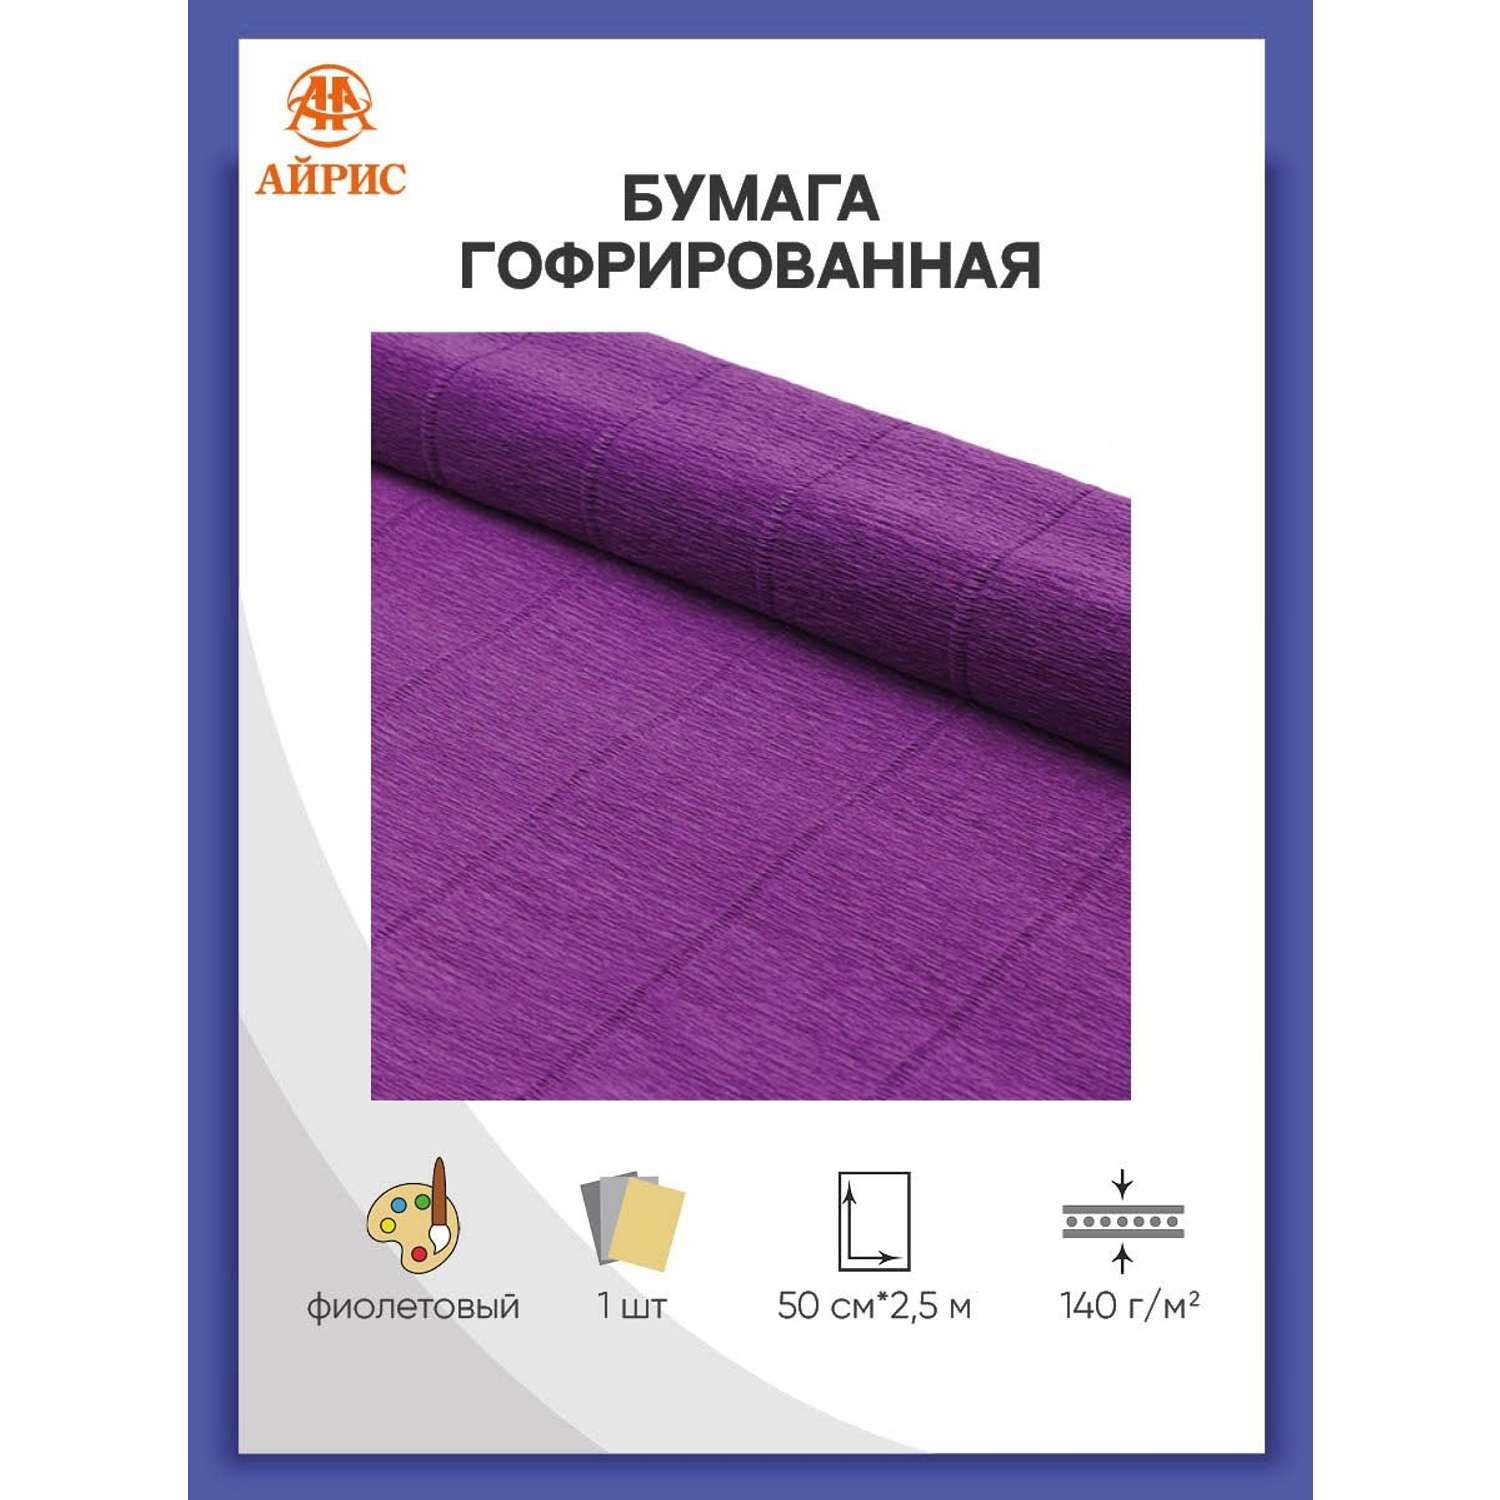 Бумага Айрис гофрированная креповая для творчества 50 см х 2.5 м 140 г фиолетовая - фото 1